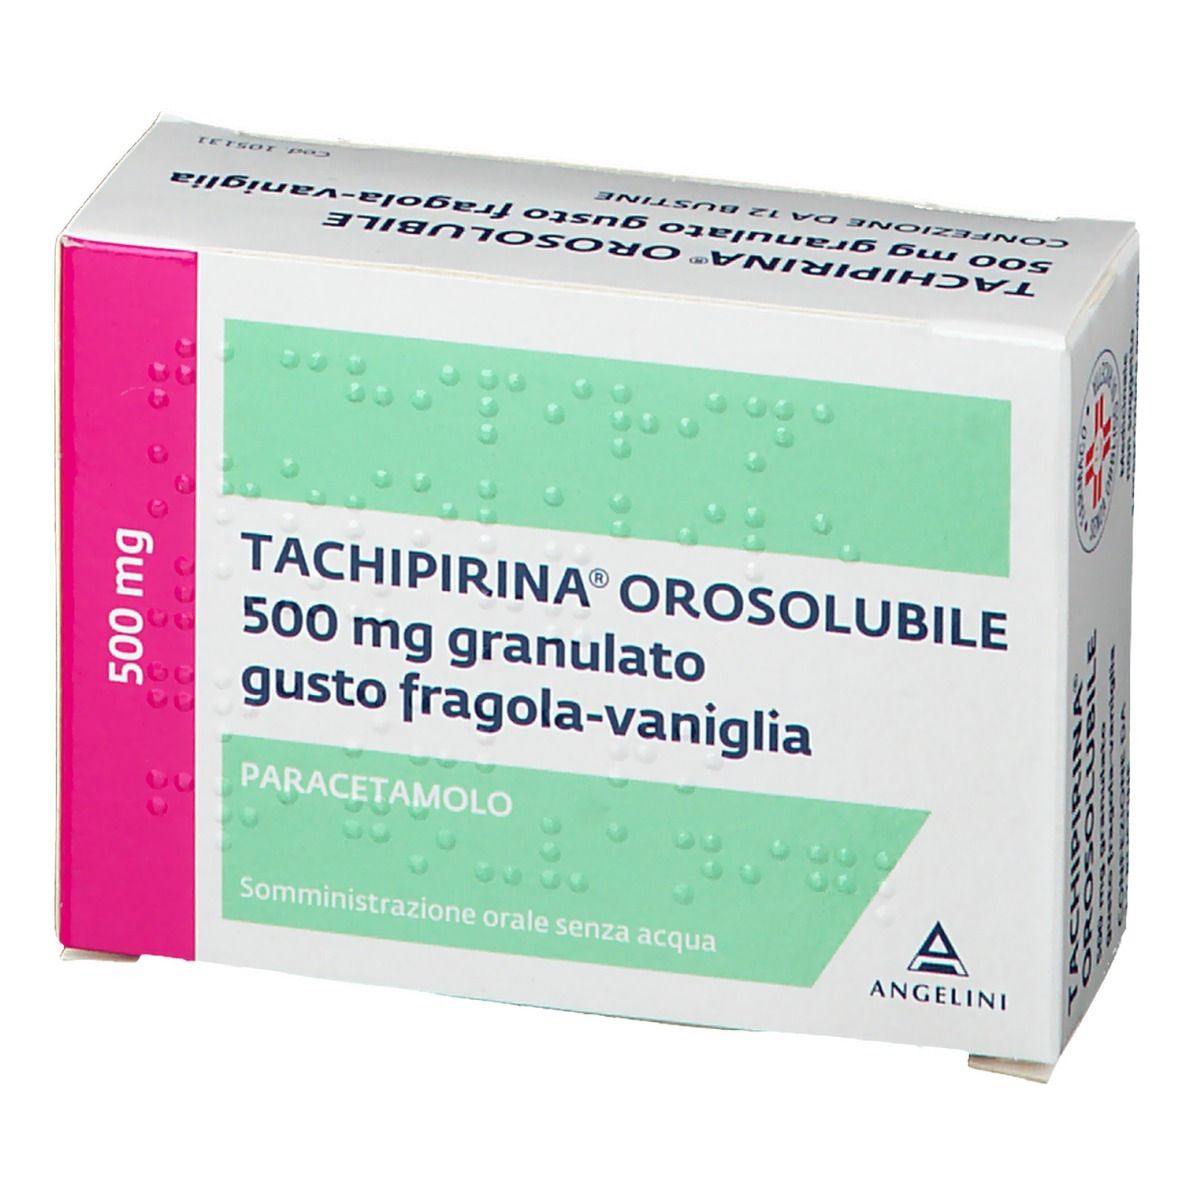 TACHIPIRINA® OROSOLUBILE 500 mg Gusto fragola-vaniglia